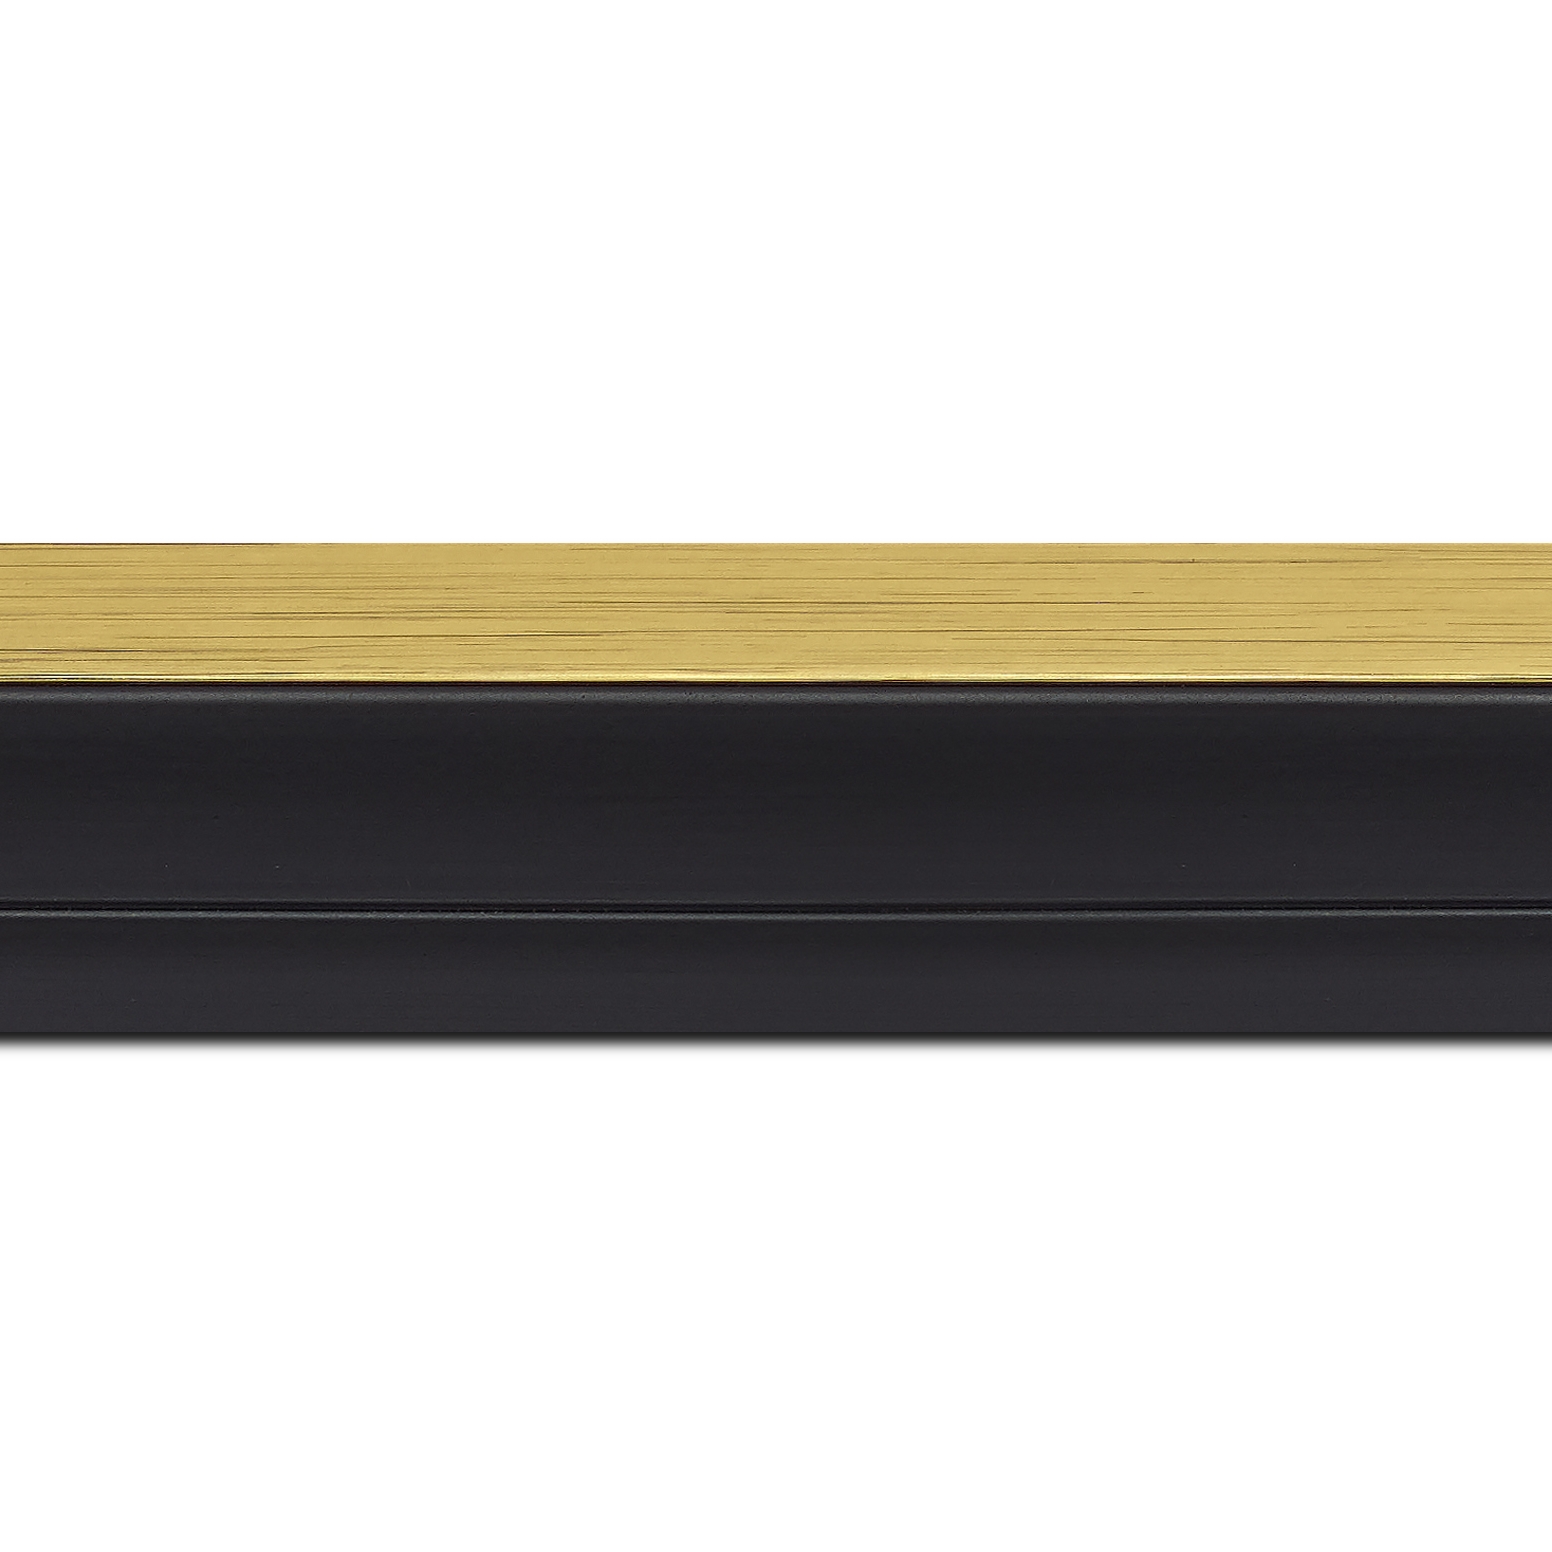 Pack par 12m, bois caisse américaine xl profil escalier largeur 4.9cm noir mat  filet or (spécialement conçu pour les châssis 3d d'une épaisseur de 3 à 4cm)(longueur baguette pouvant varier entre 2.40m et 3m selon arrivage des bois)